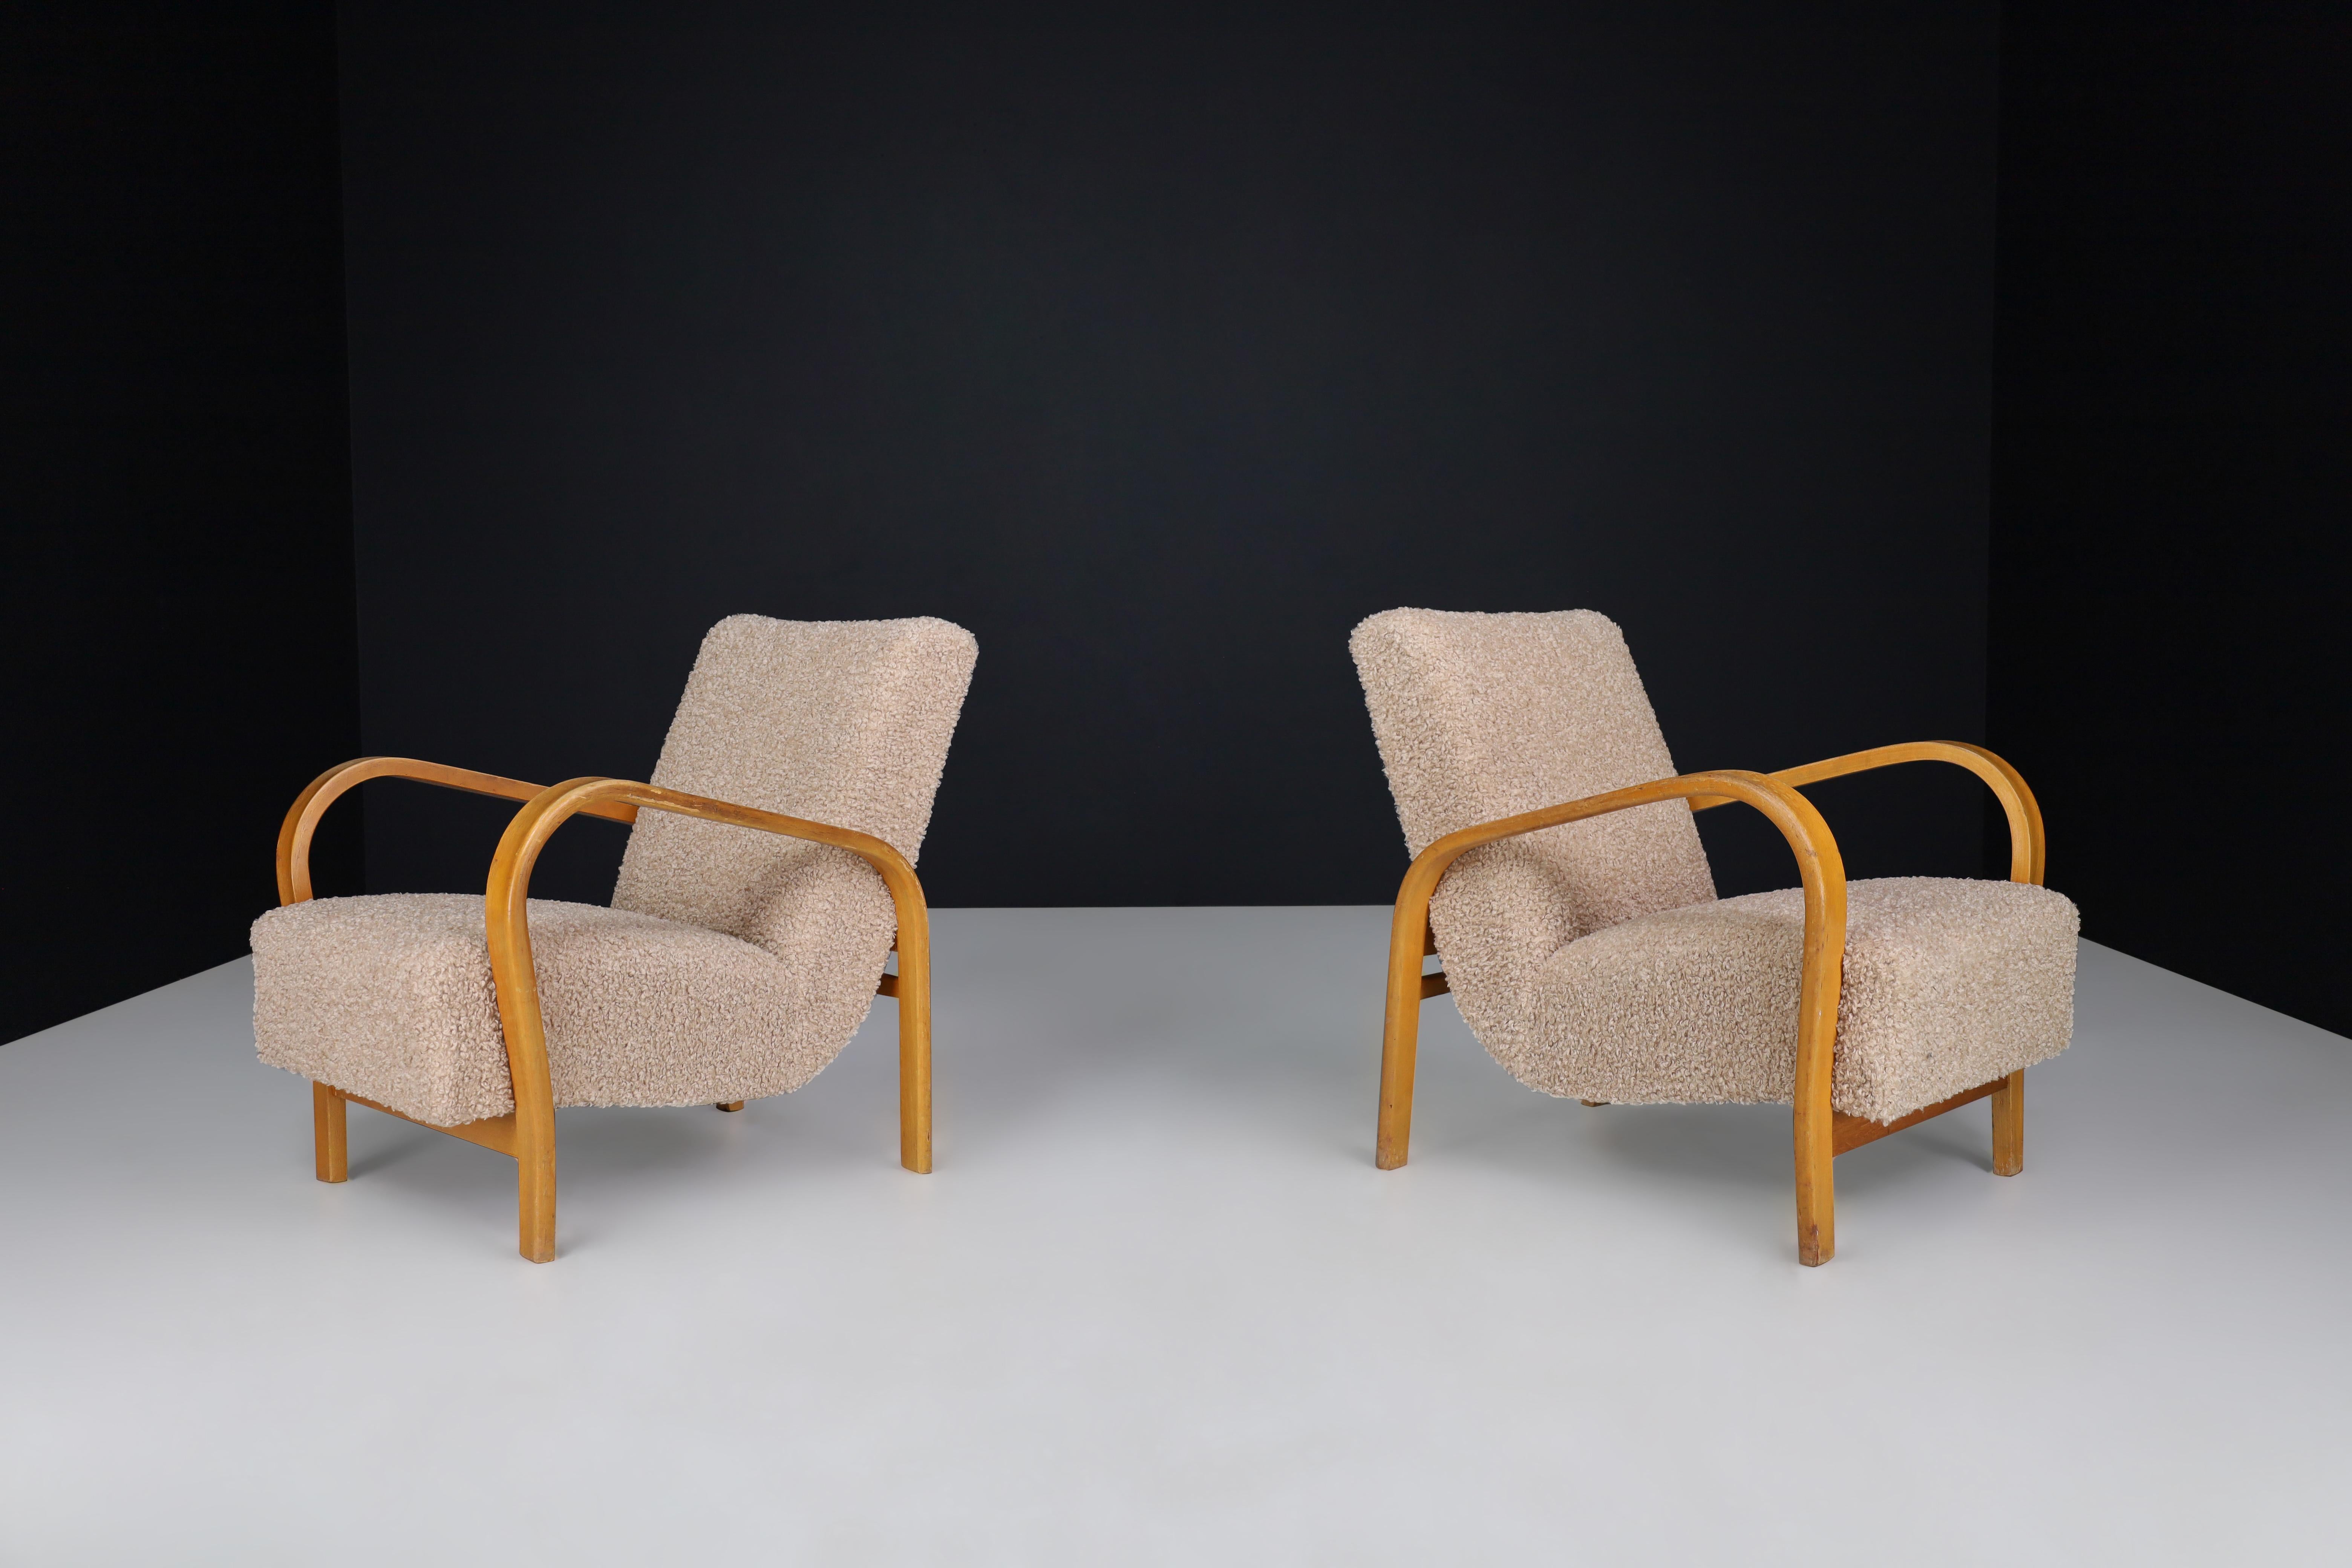 Karel Koželka & Antonín Kropáček, fauteuils en bois courbé rembourrés, Tchécoslovaquie, 1940

Nous proposons des fauteuils en bois courbé de Karel Koželka et Antonín Kropáček, conçus à l'origine en Tchécoslovaquie vers 1940, qui ont été retapissés.